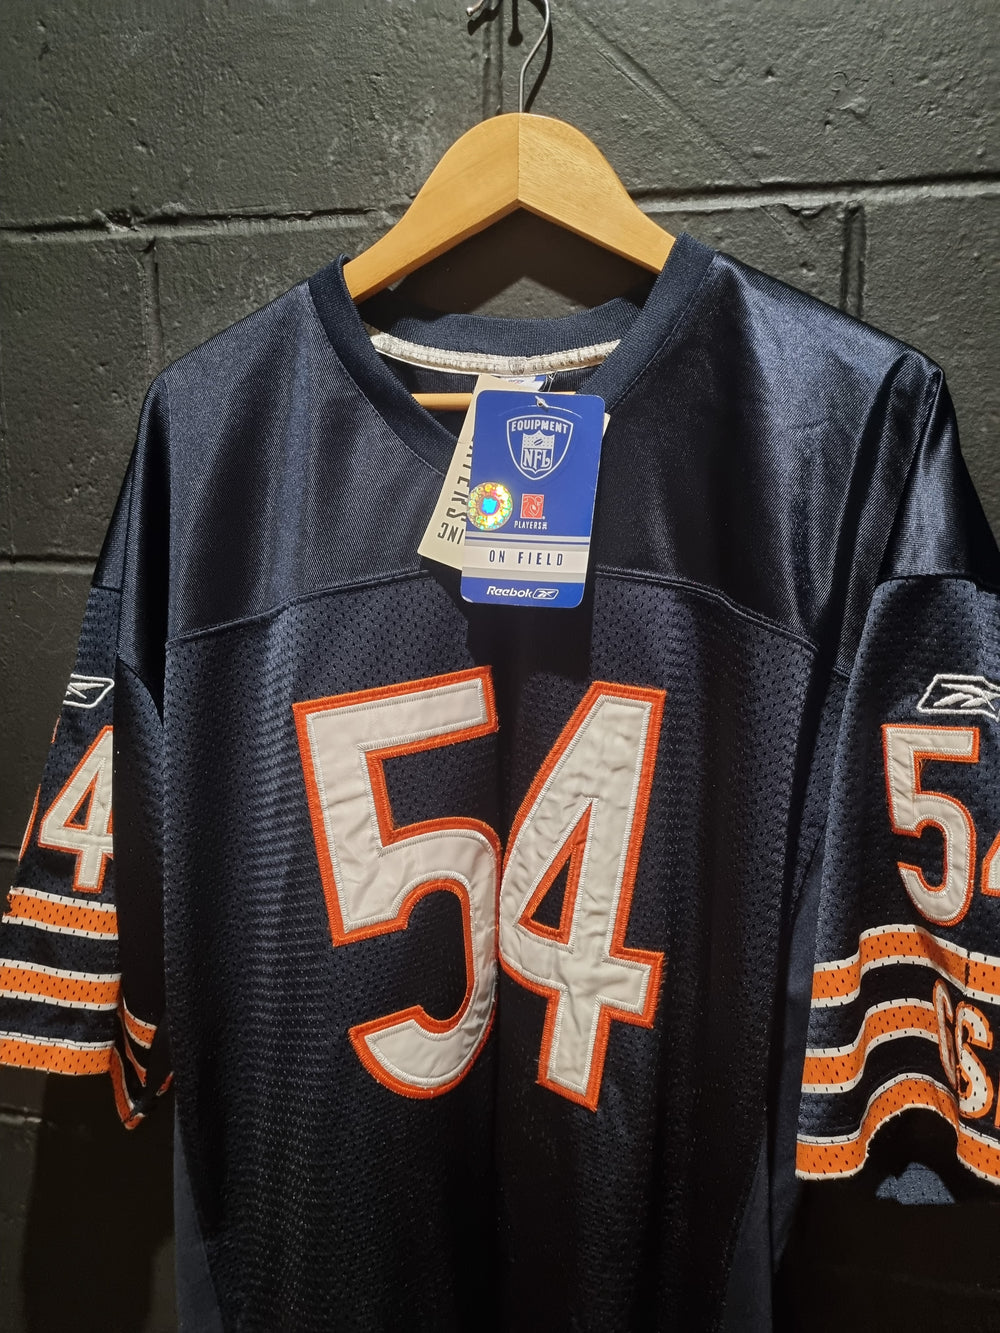 Chicago Bears Urlacher Reebok XL